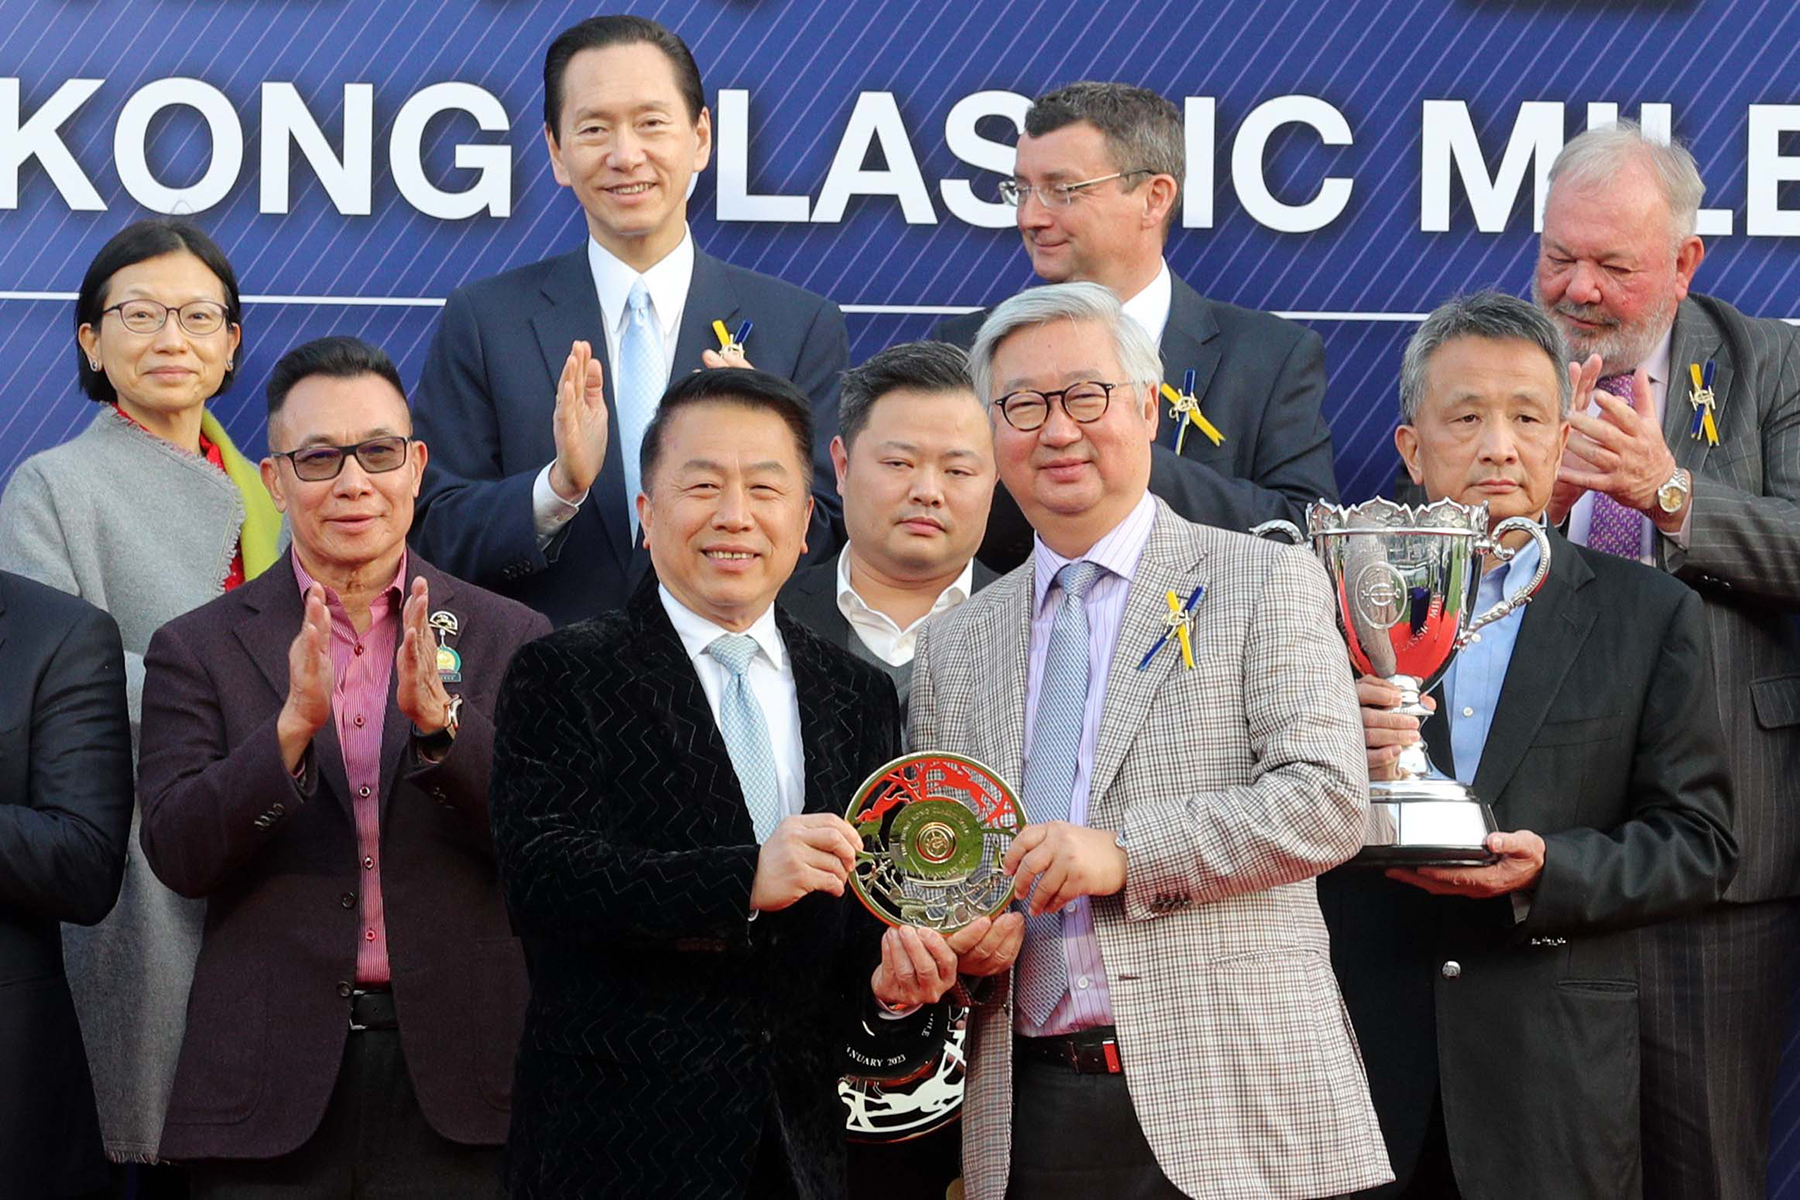 馬會董事楊紹信博士（右）在頒獎儀式上將香港經典一哩賽獎盃及鍍金碟頒予「遨遊氣泡」的馬主日月輝煌賽馬團體、練馬師姚本輝及騎師賈傑美。